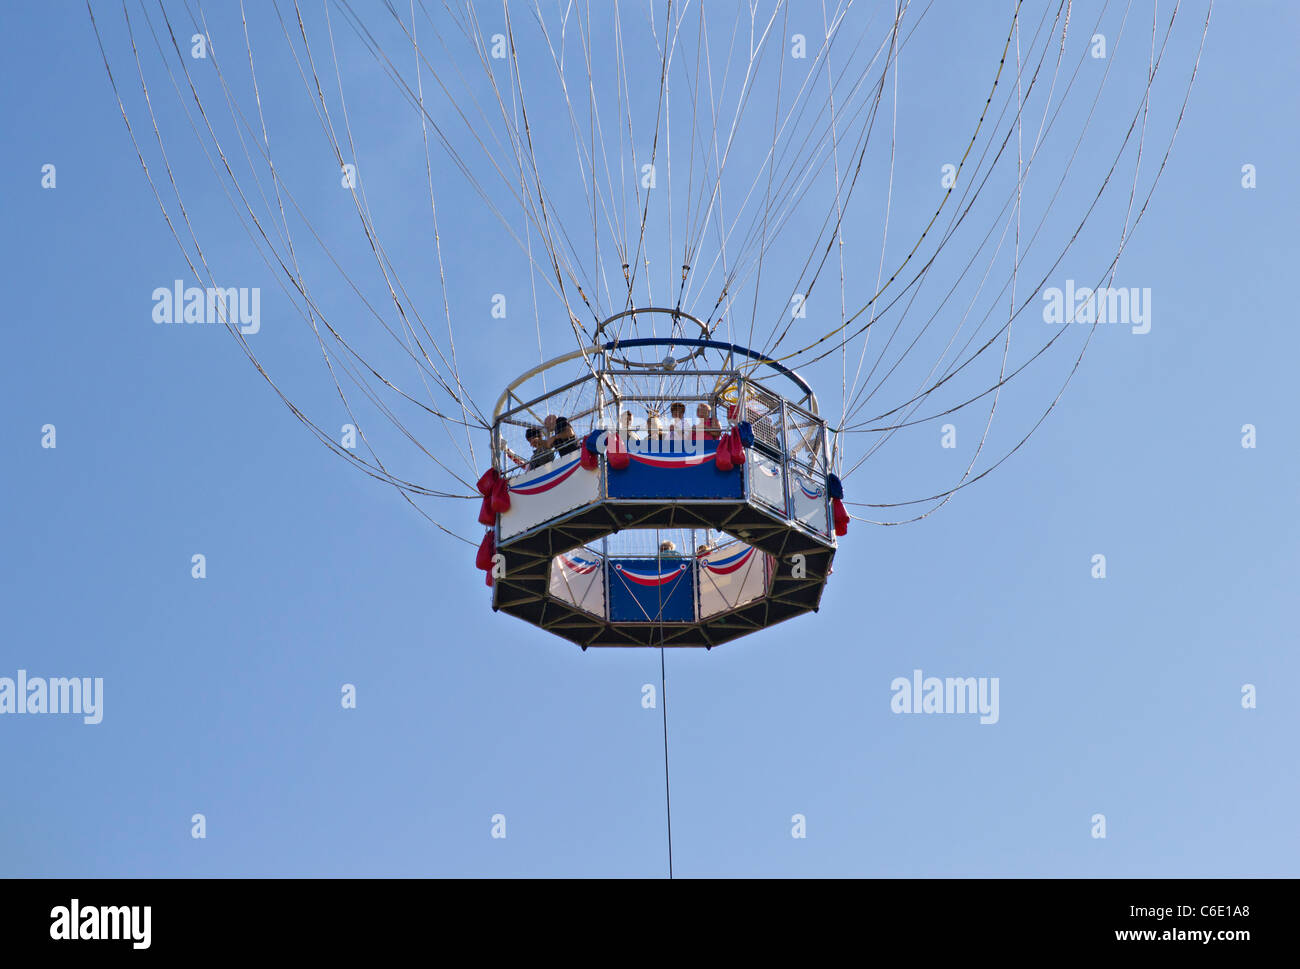 Hélium Ballon panier gondole ballon d'observation - pas visible, juste des gens suspendus par de nombreux fils et une courroie d'acier Banque D'Images